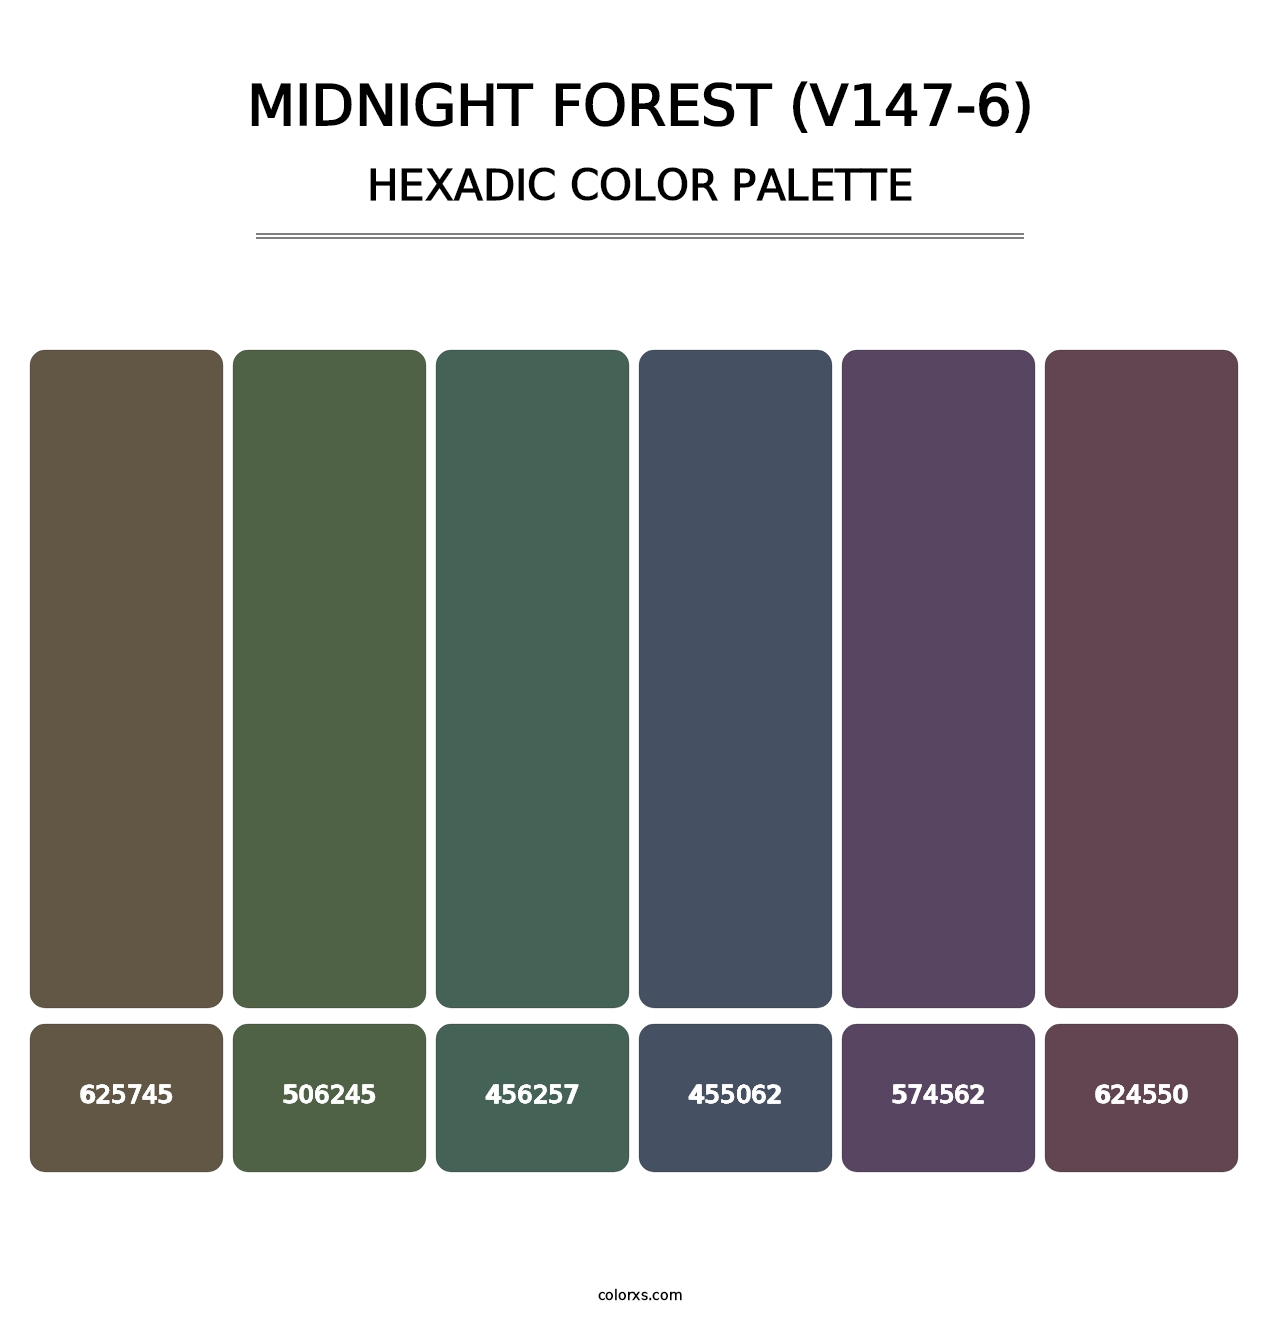 Midnight Forest (V147-6) - Hexadic Color Palette